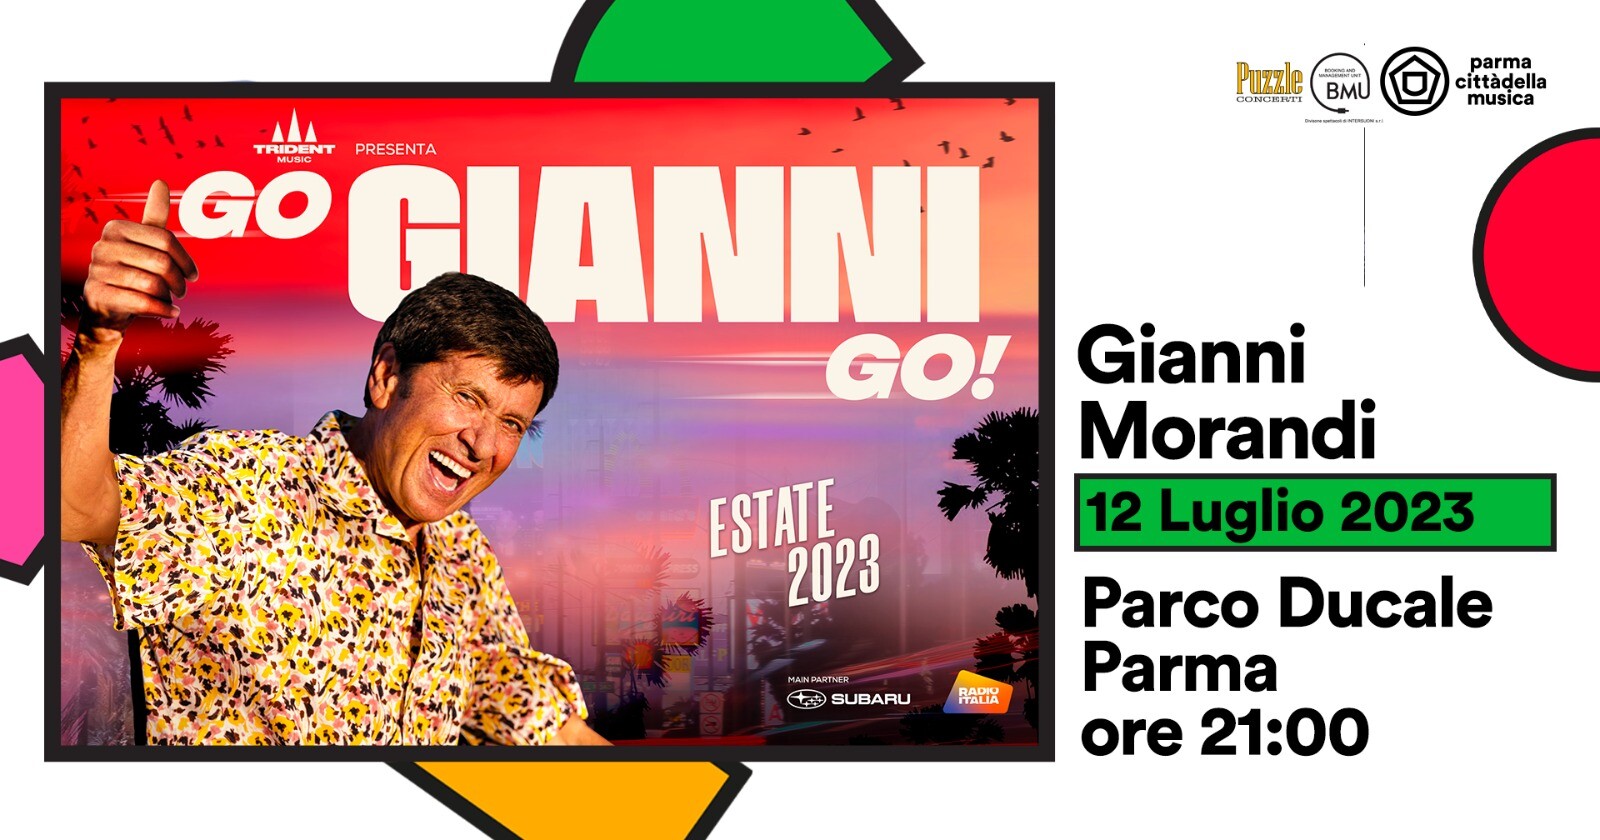 GIANNI MORANDI in "Go Gianni Go!" al Parco Ducale per Parma Cittàdella Musica